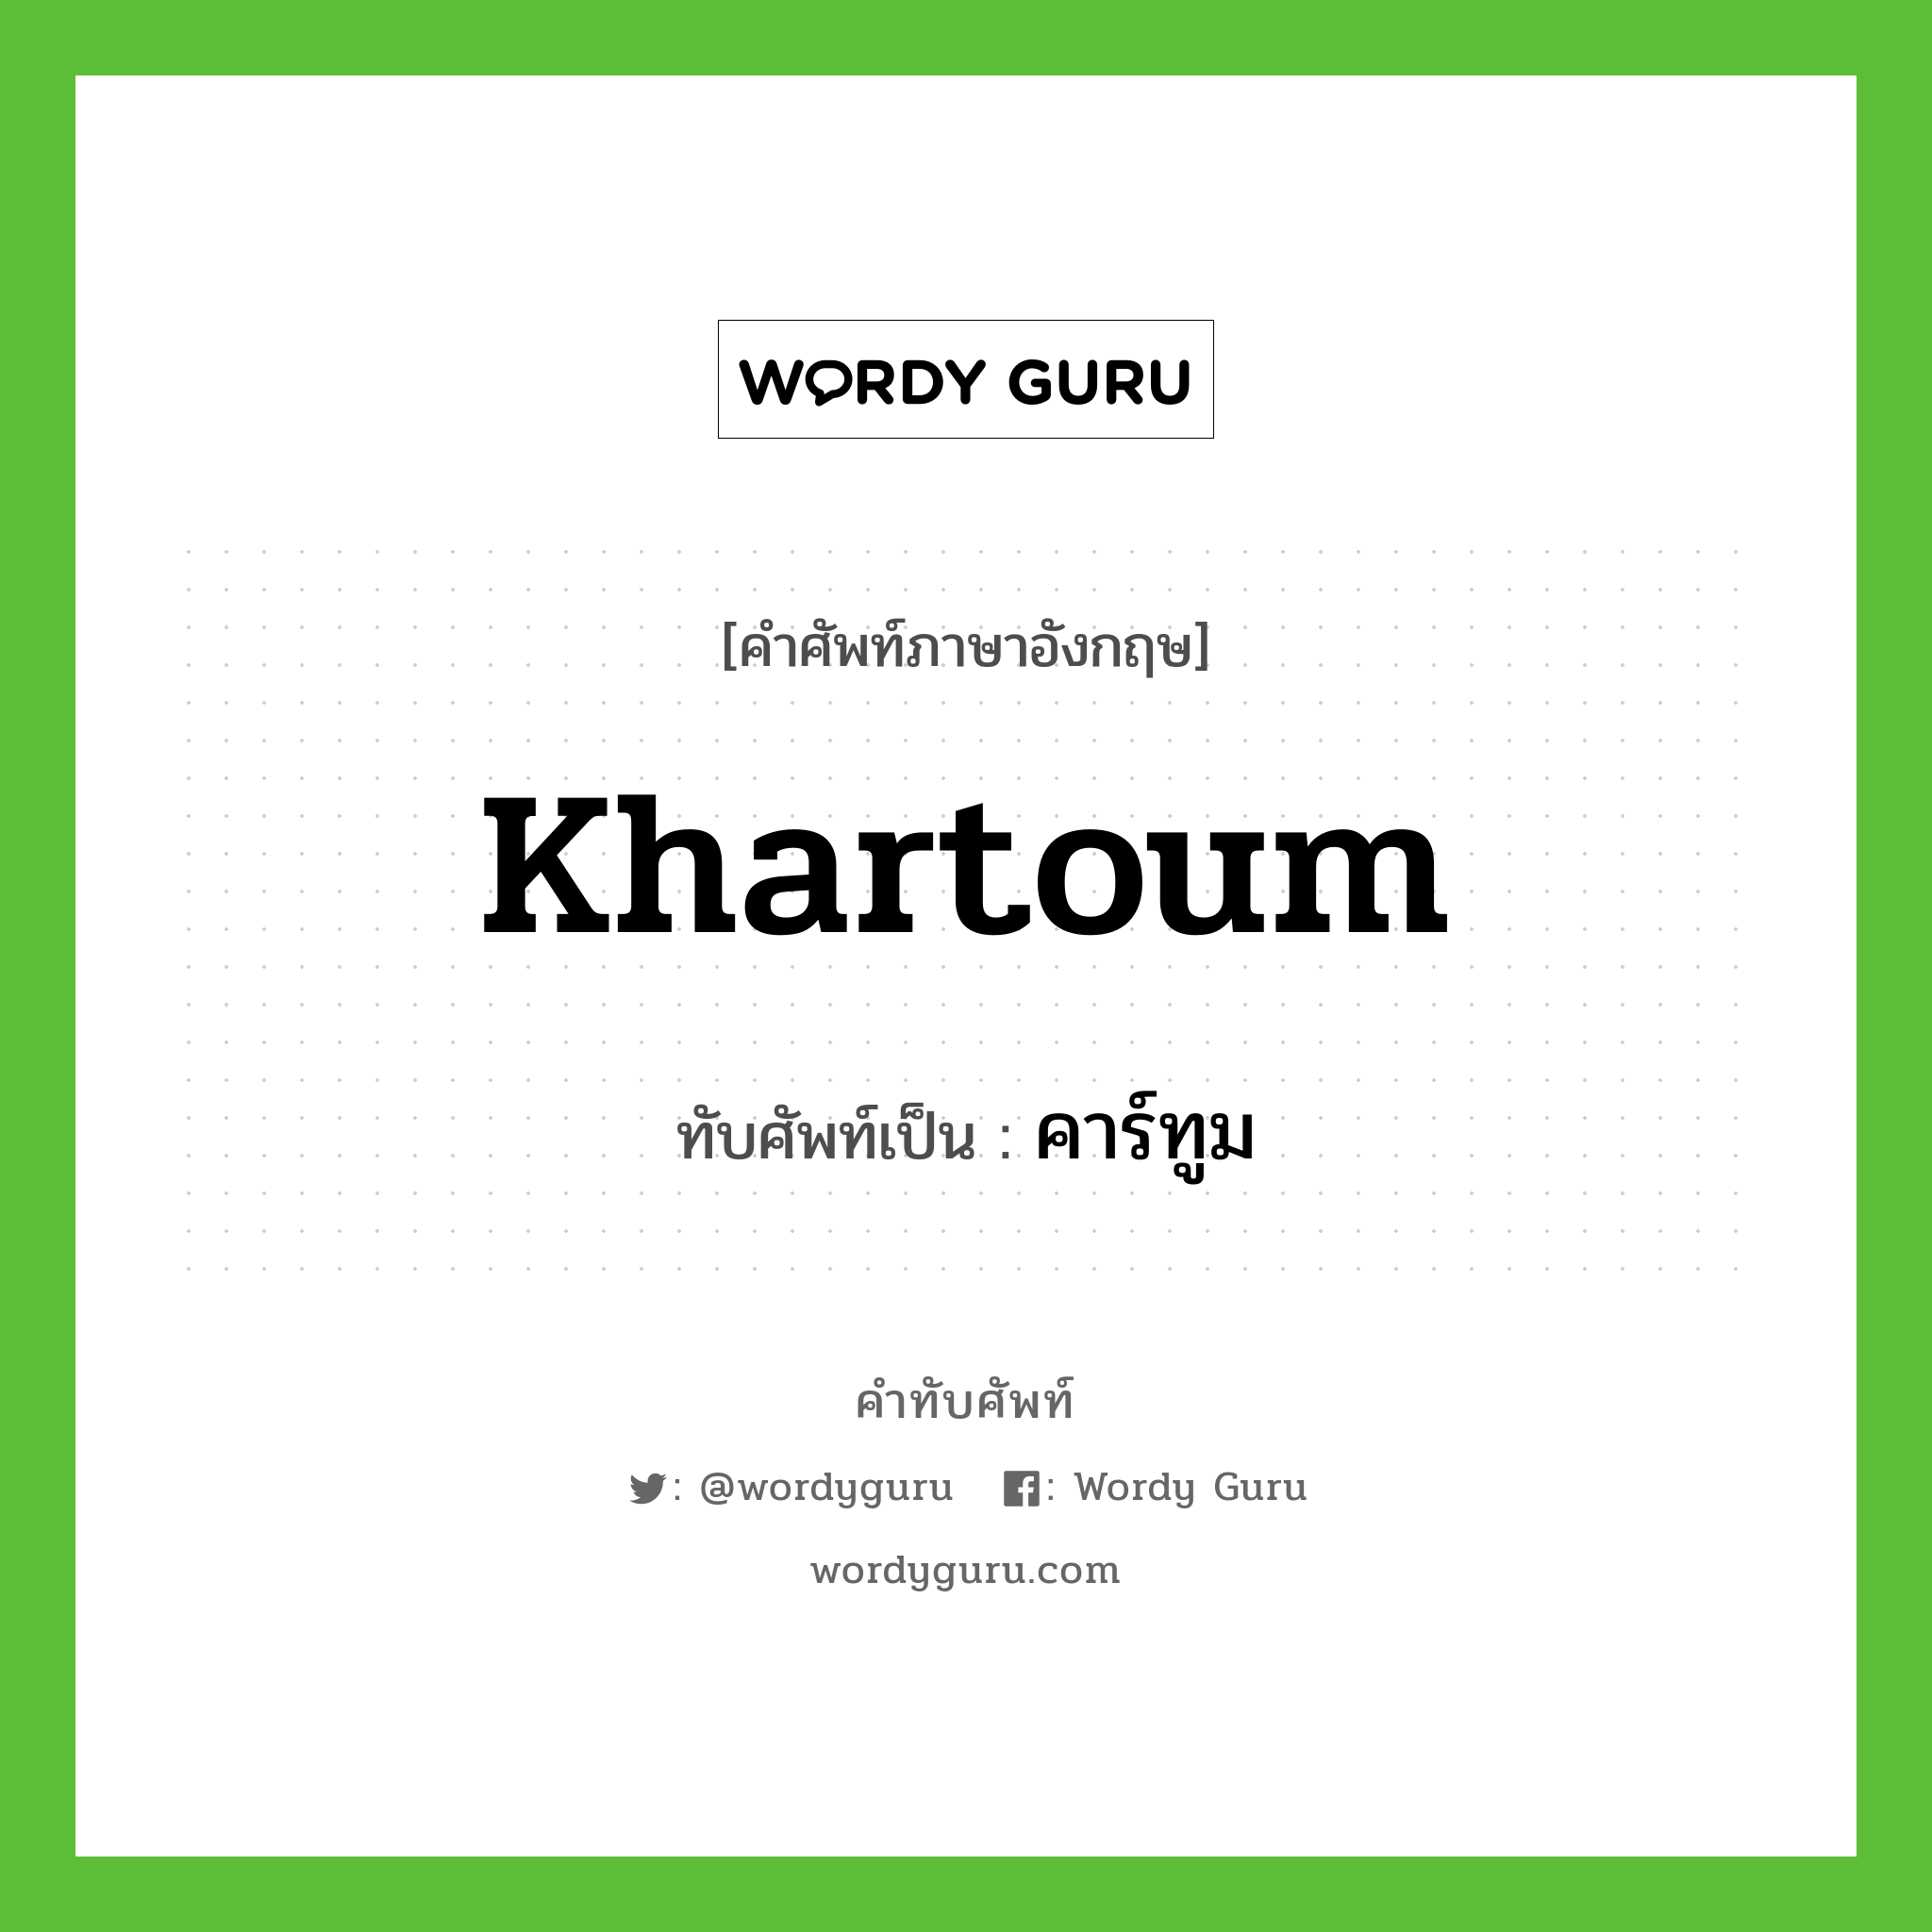 คาร์ทูม เขียนอย่างไร?, คำศัพท์ภาษาอังกฤษ คาร์ทูม ทับศัพท์เป็น khartoum